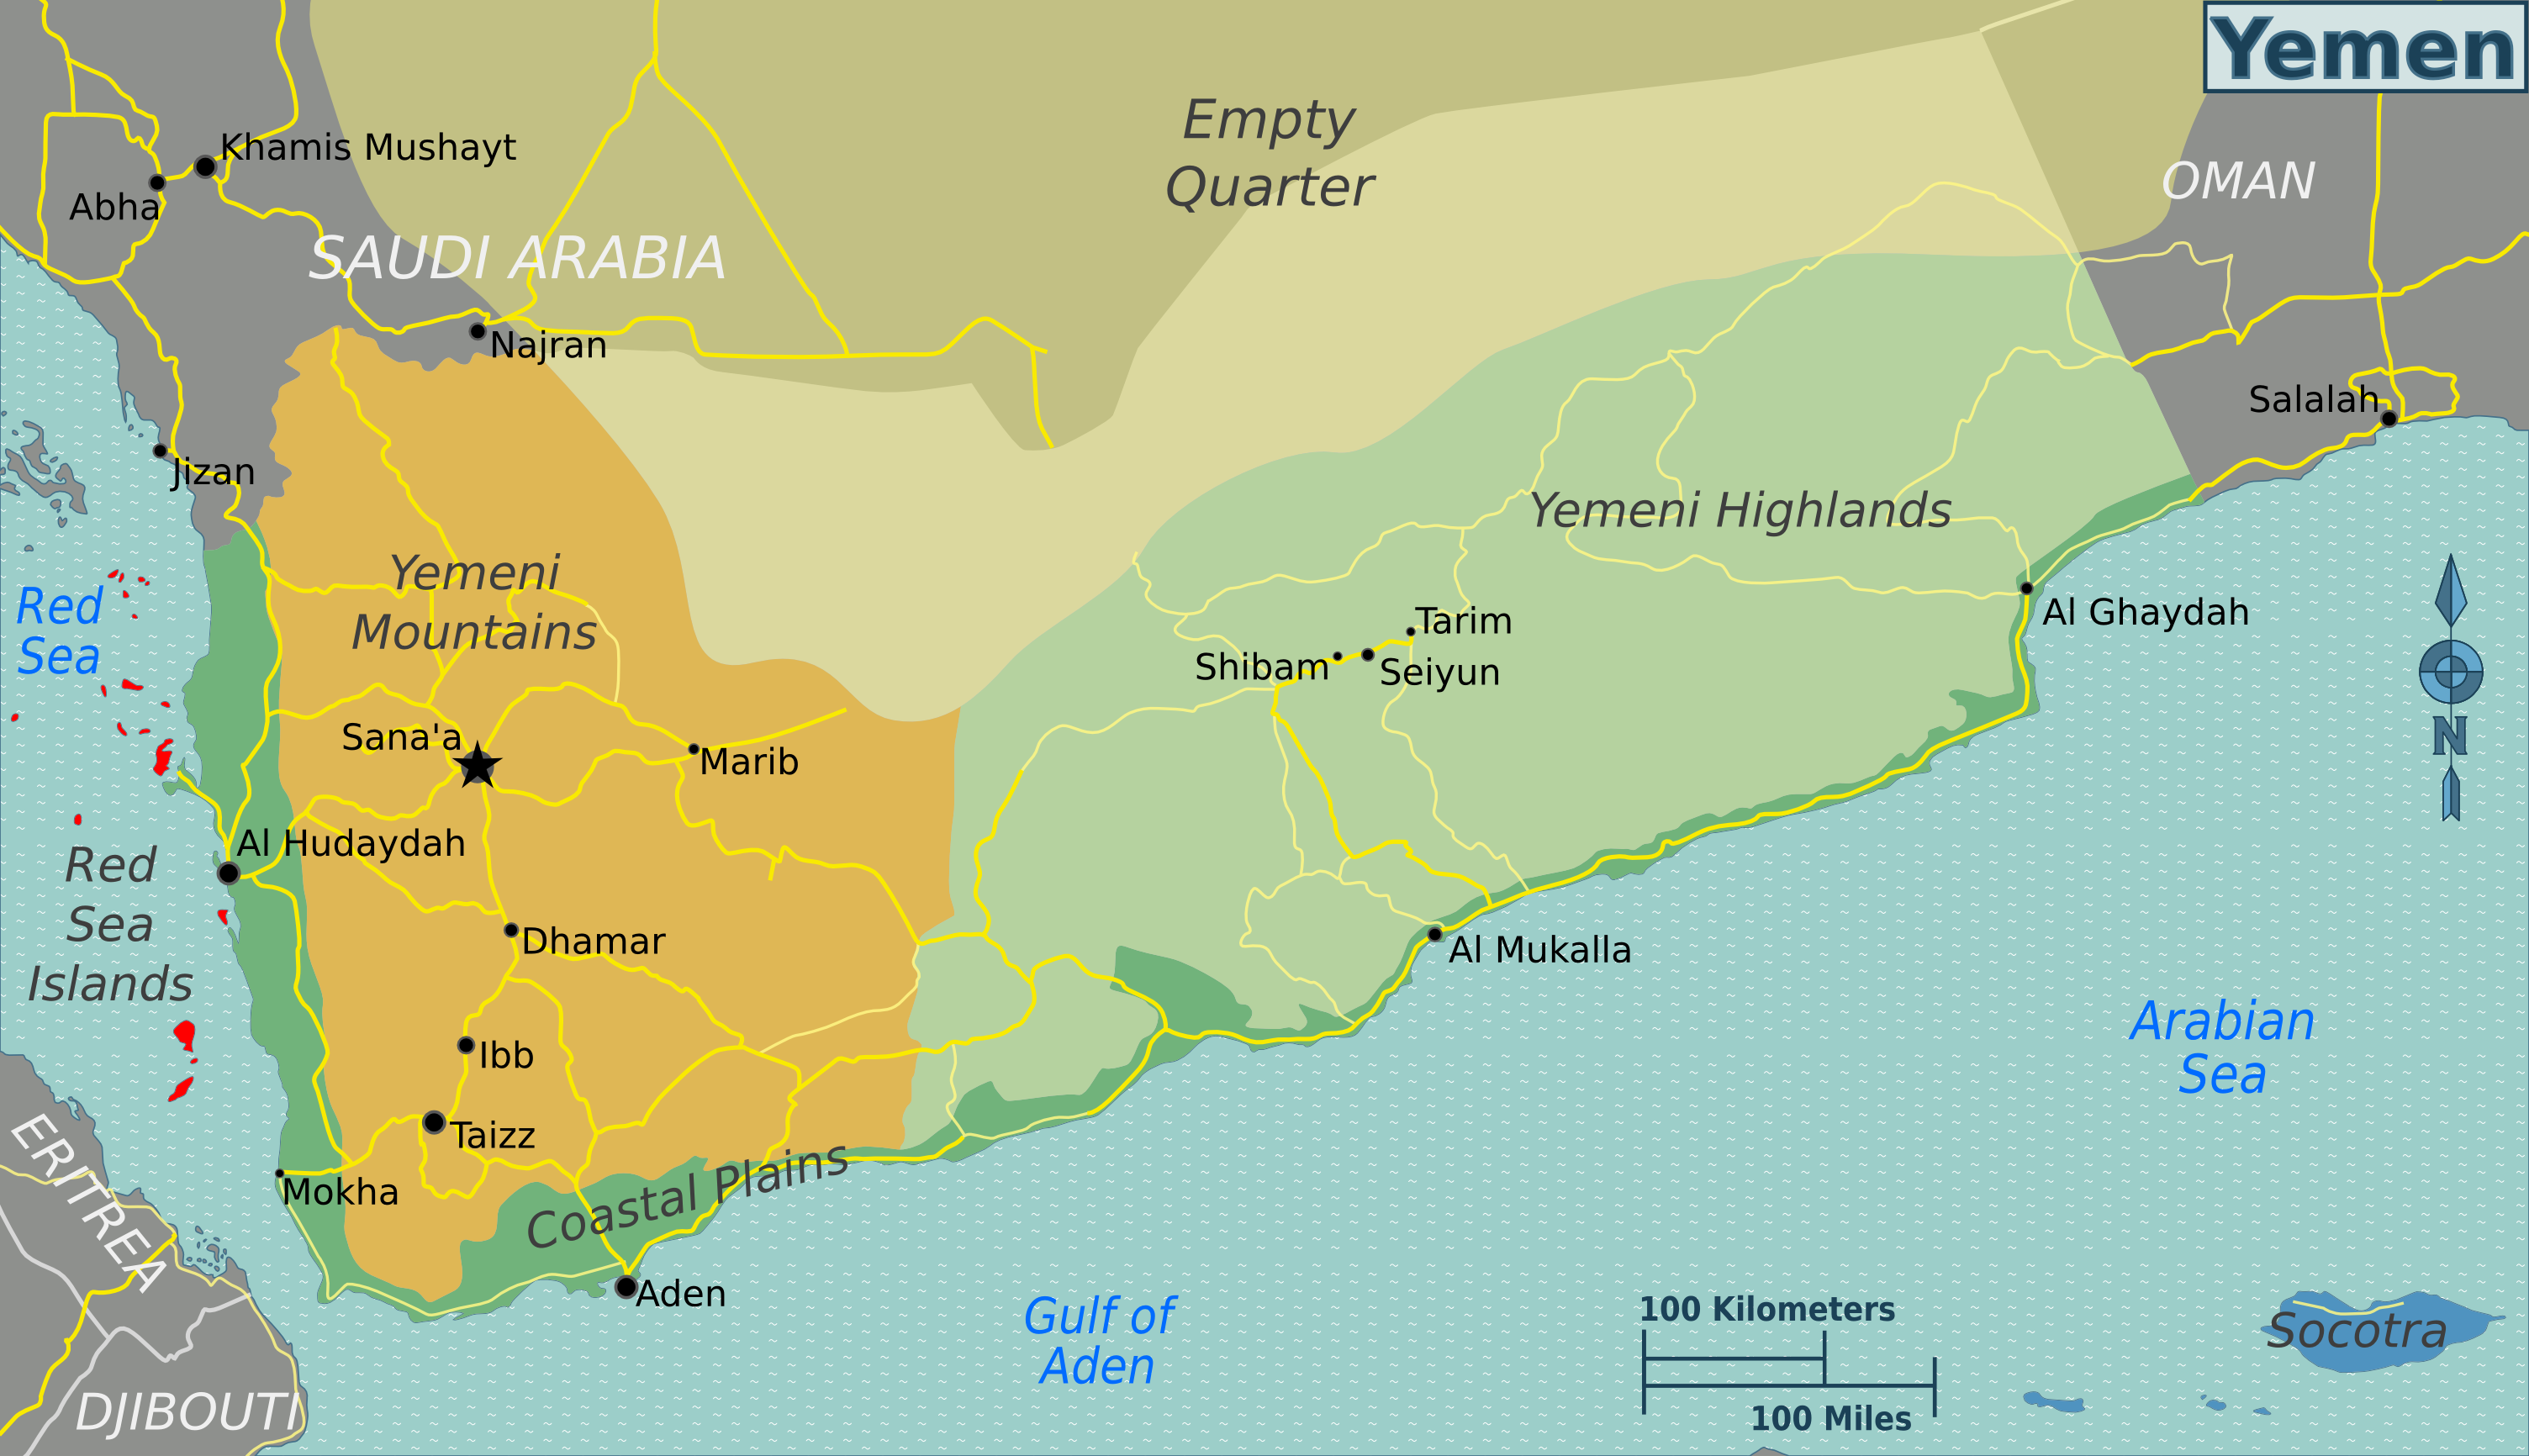 yemen_regions_map